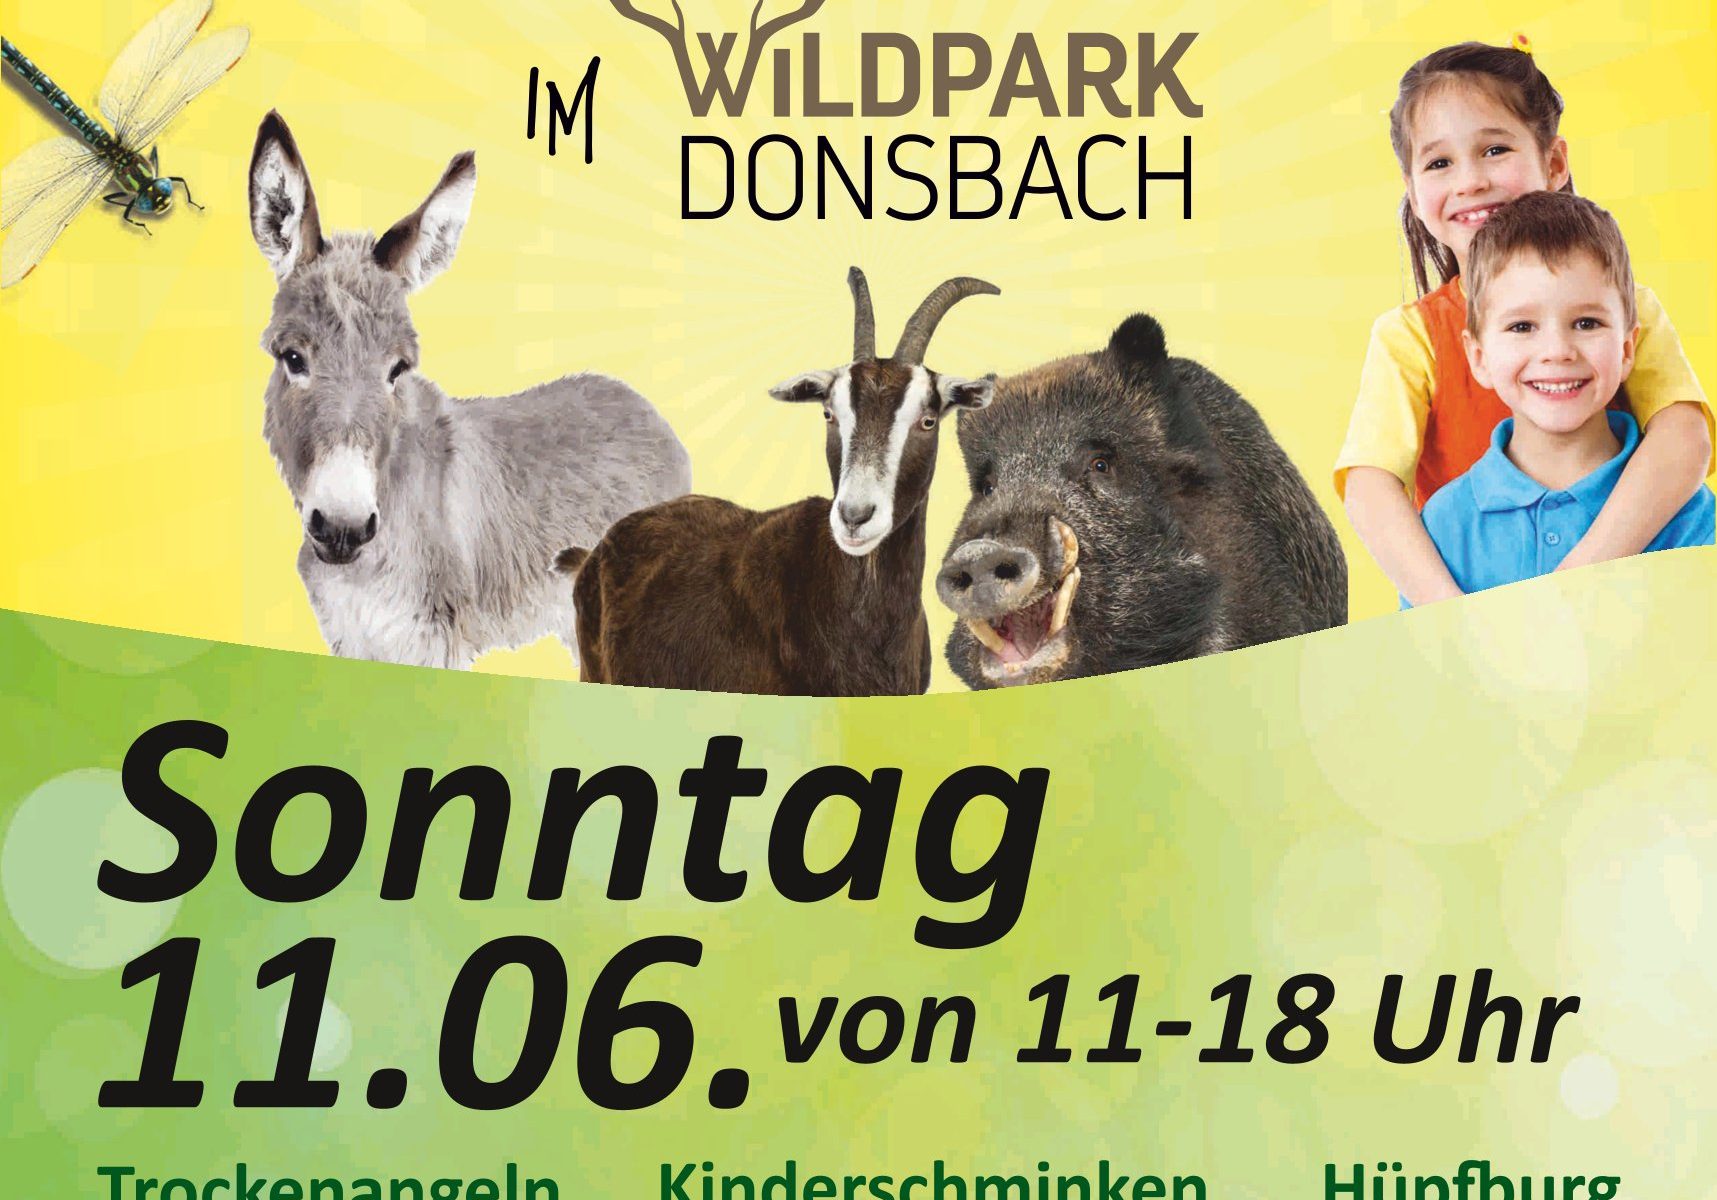 Ein Plakat zum Familientag am 11.06. im Wildpark Donsbach.